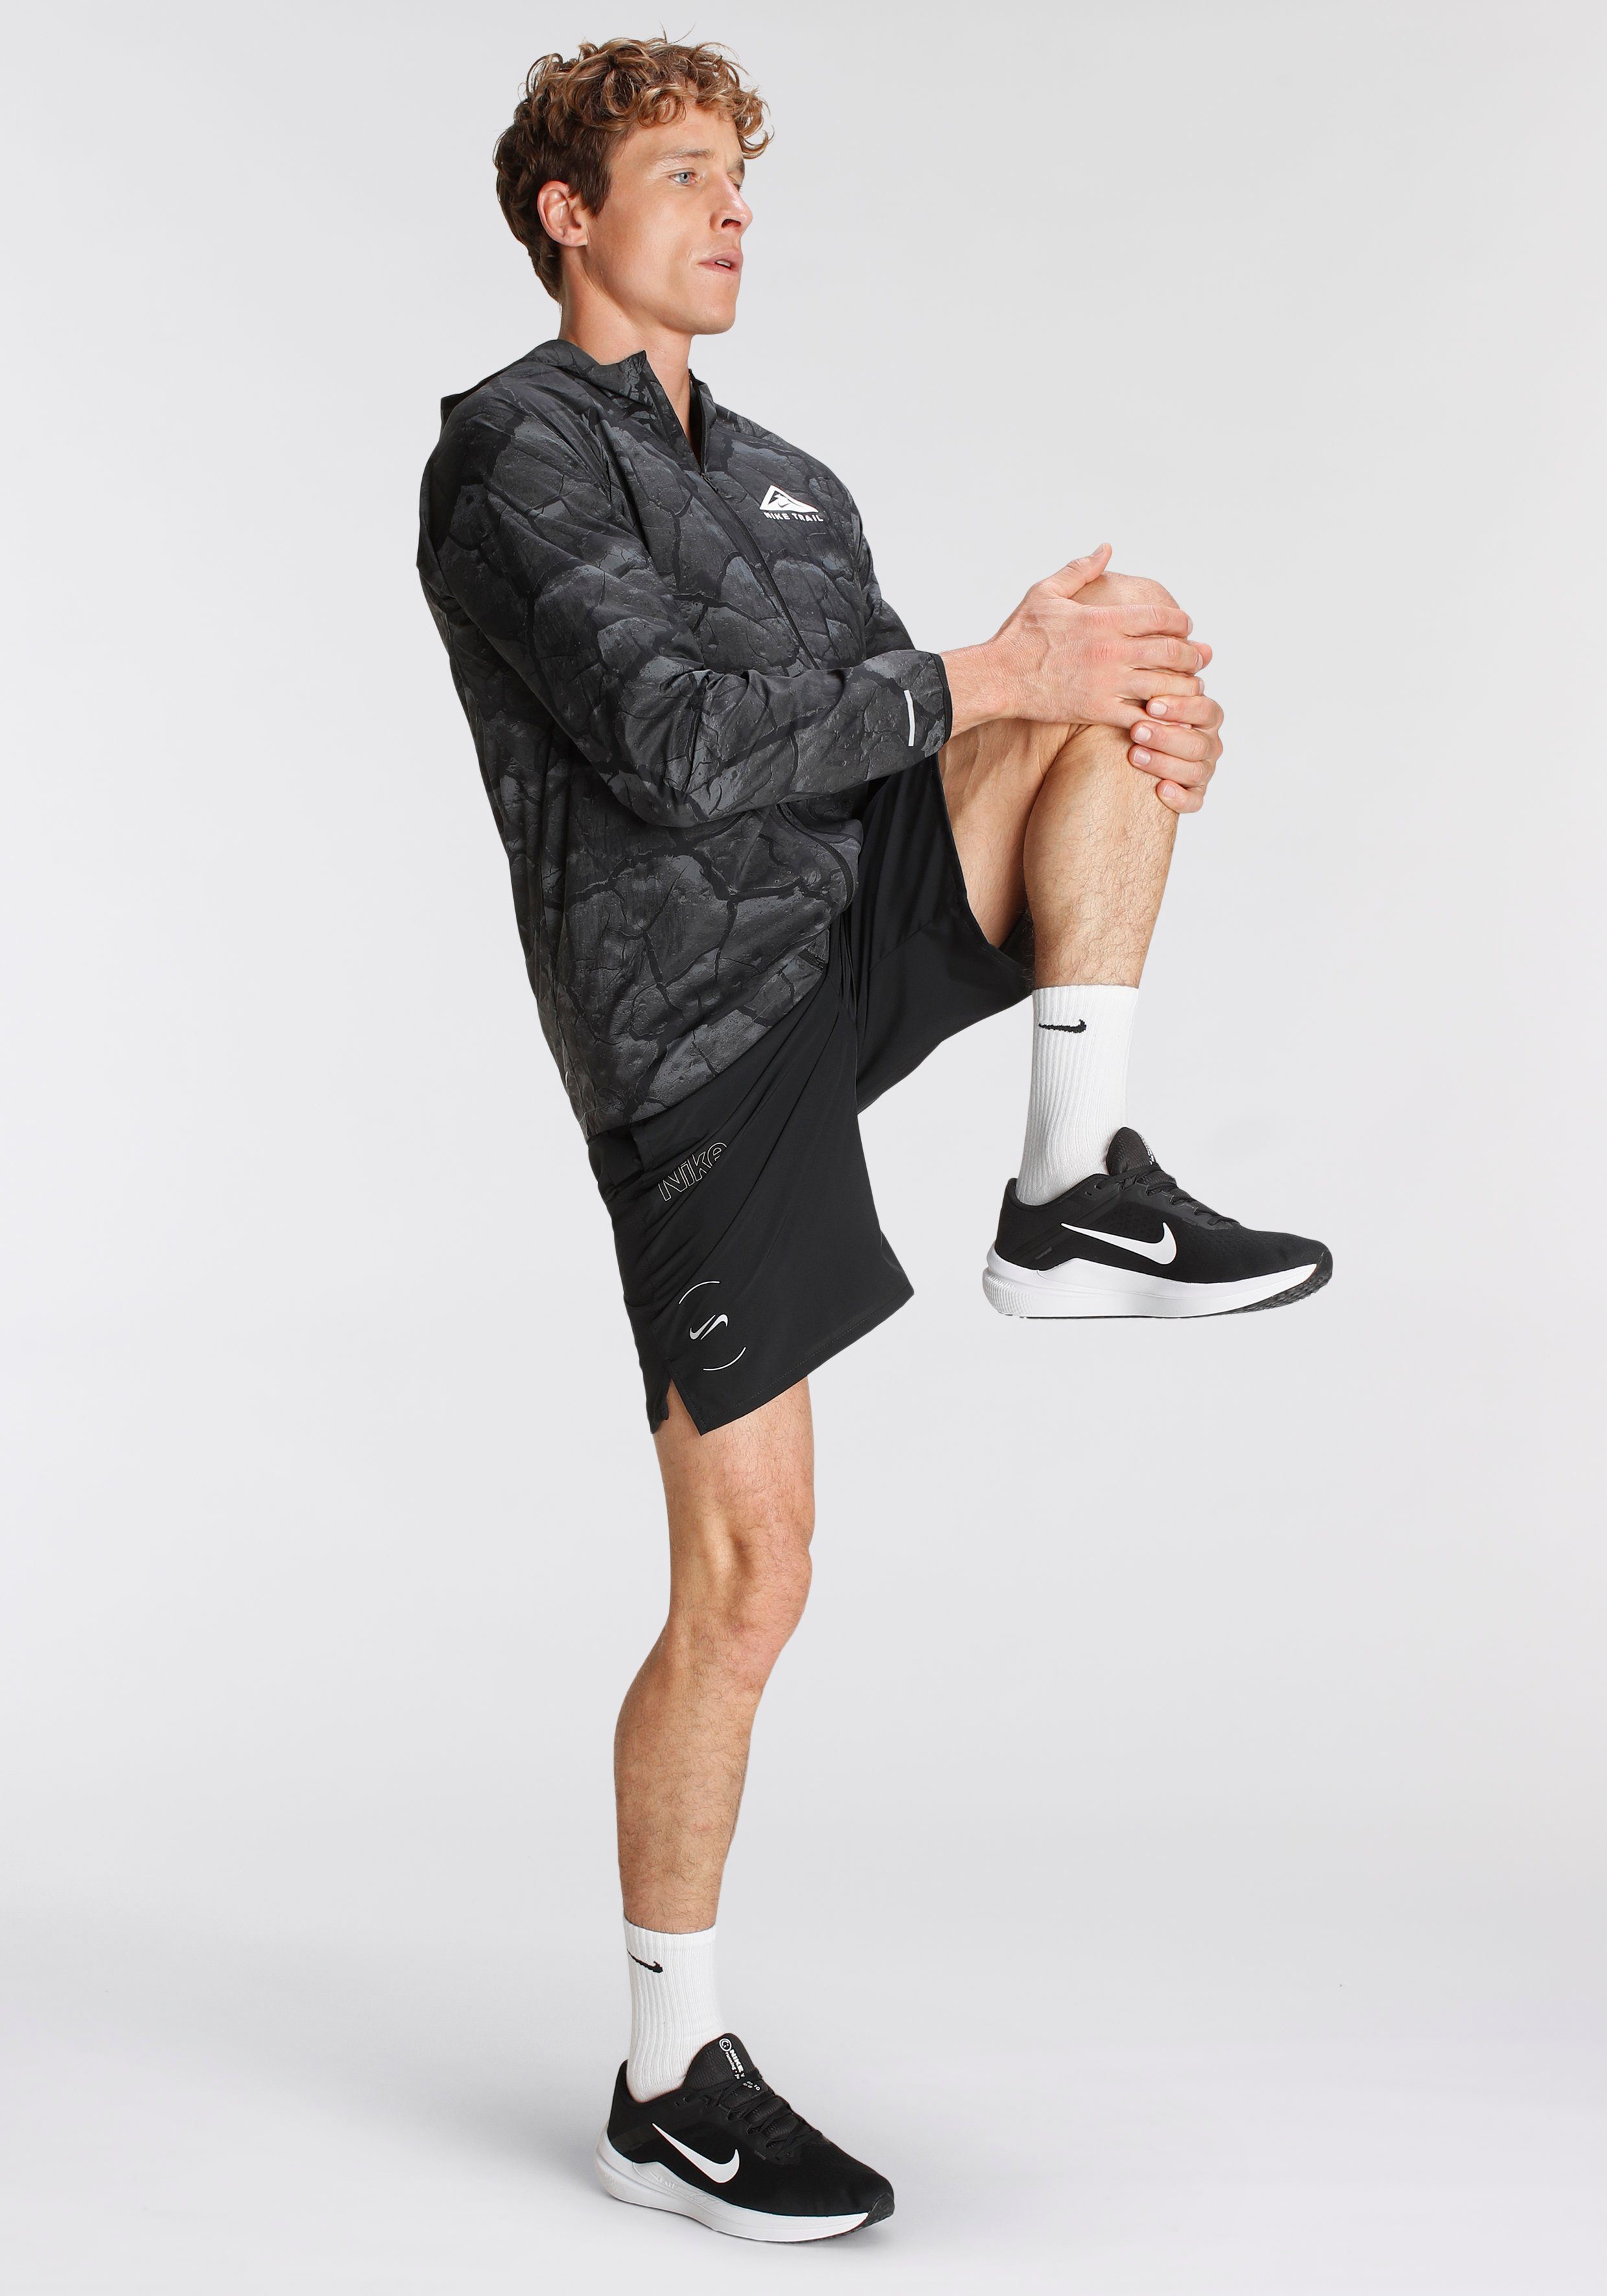 PRINT Laufjacke RUNNING TRAIL JACKET ALLOVER Nike LIGHTWEIGHT MEN'S